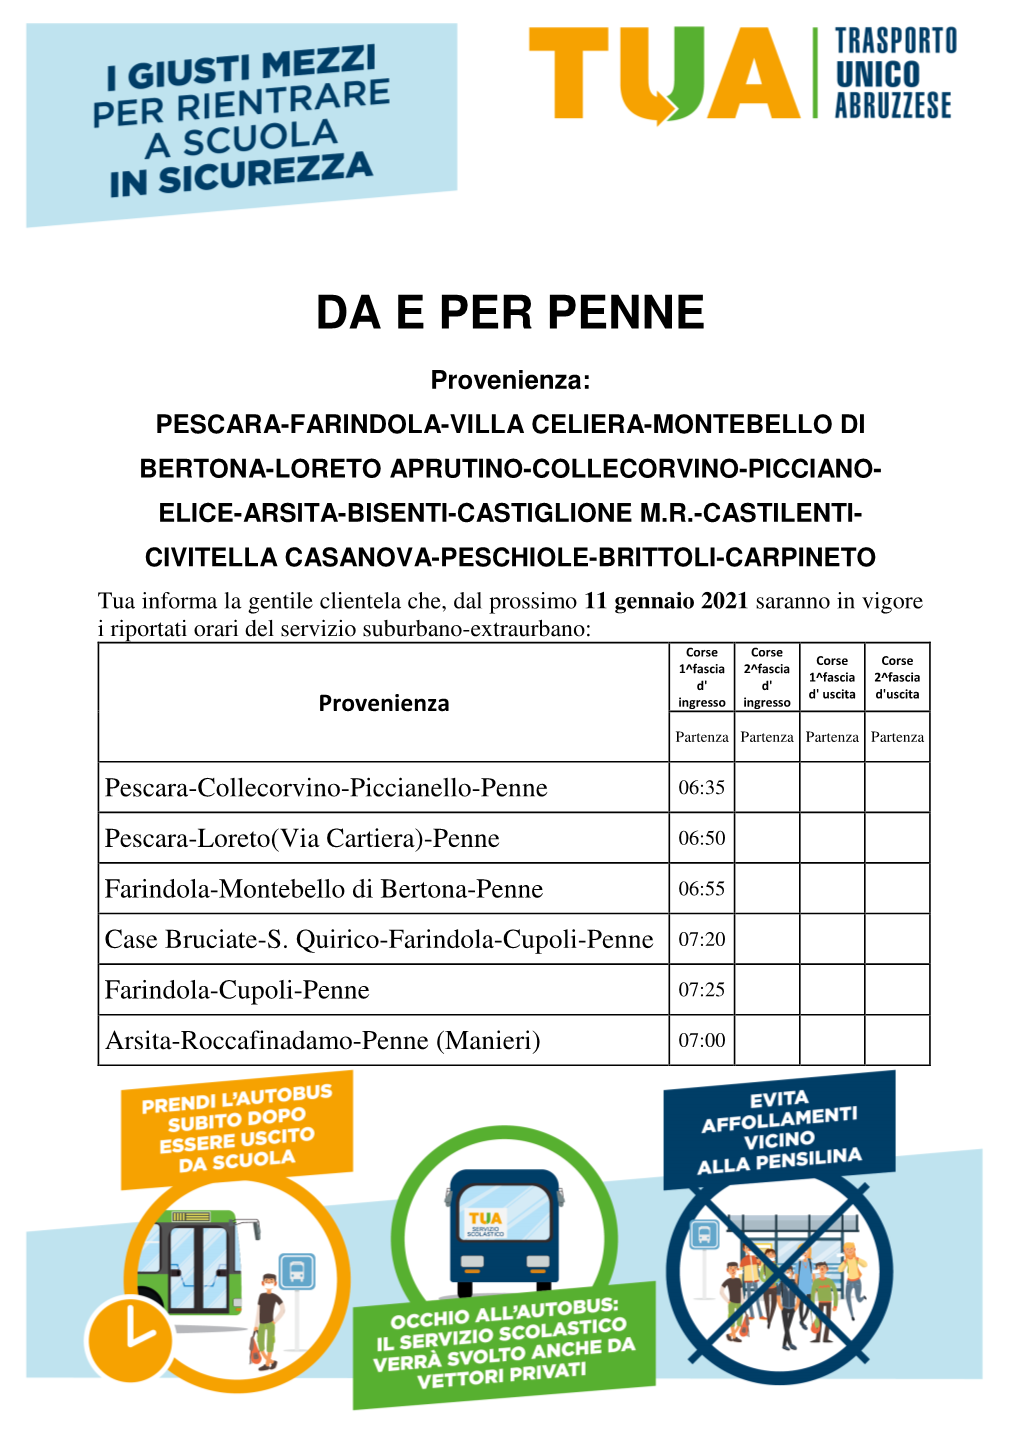 Penne-Farindola-Villa Celiera-Montebello